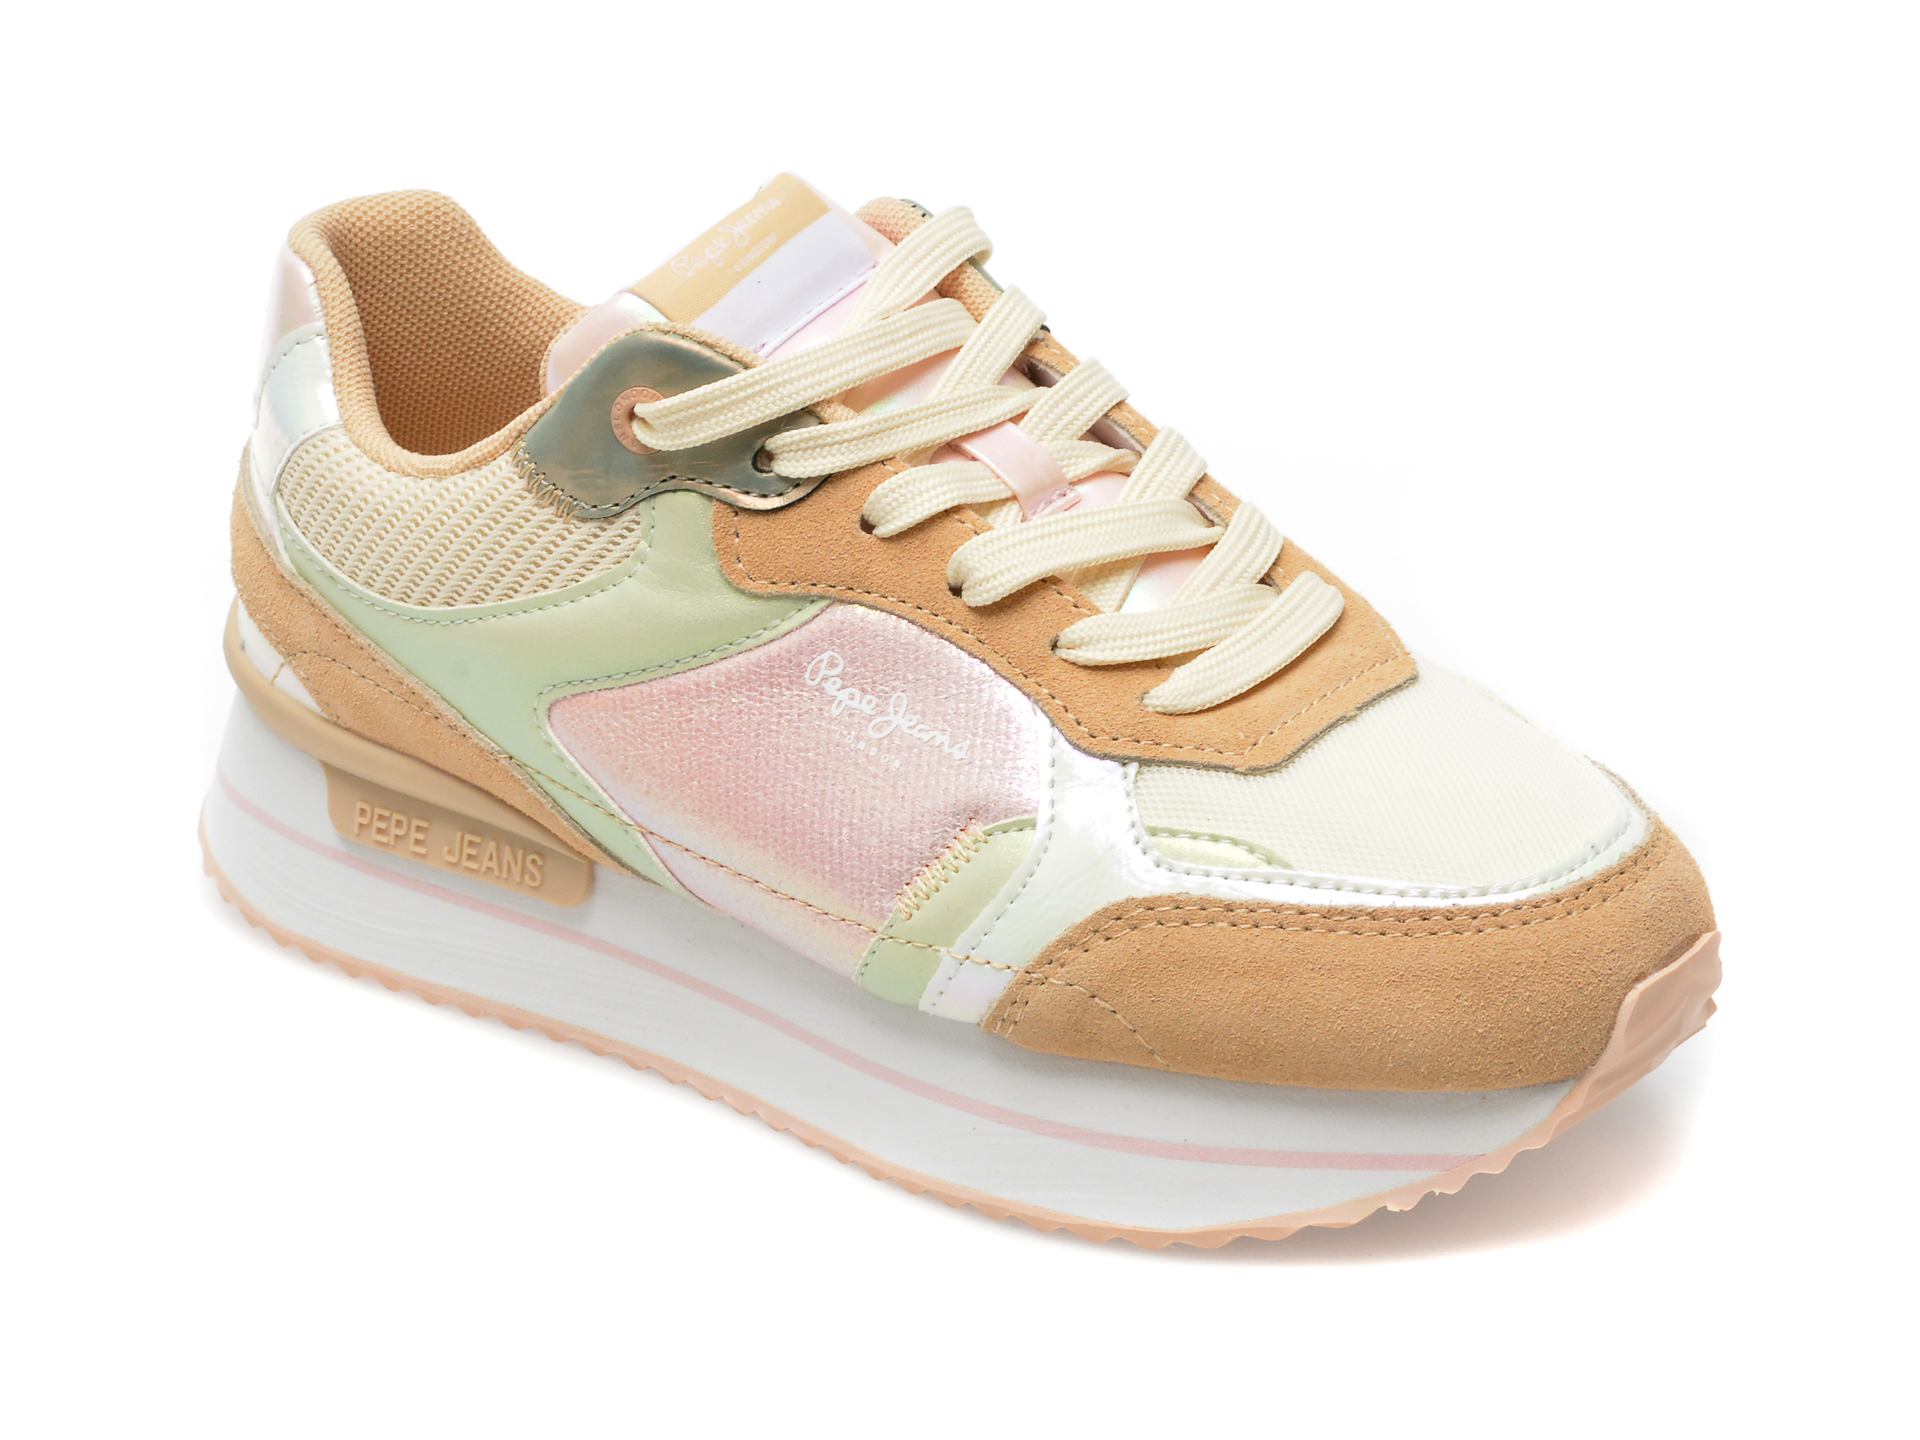 Pantofi sport PEPE JEANS multicolor, LS31478, din material textil si piele naturala /femei/pantofi Femei